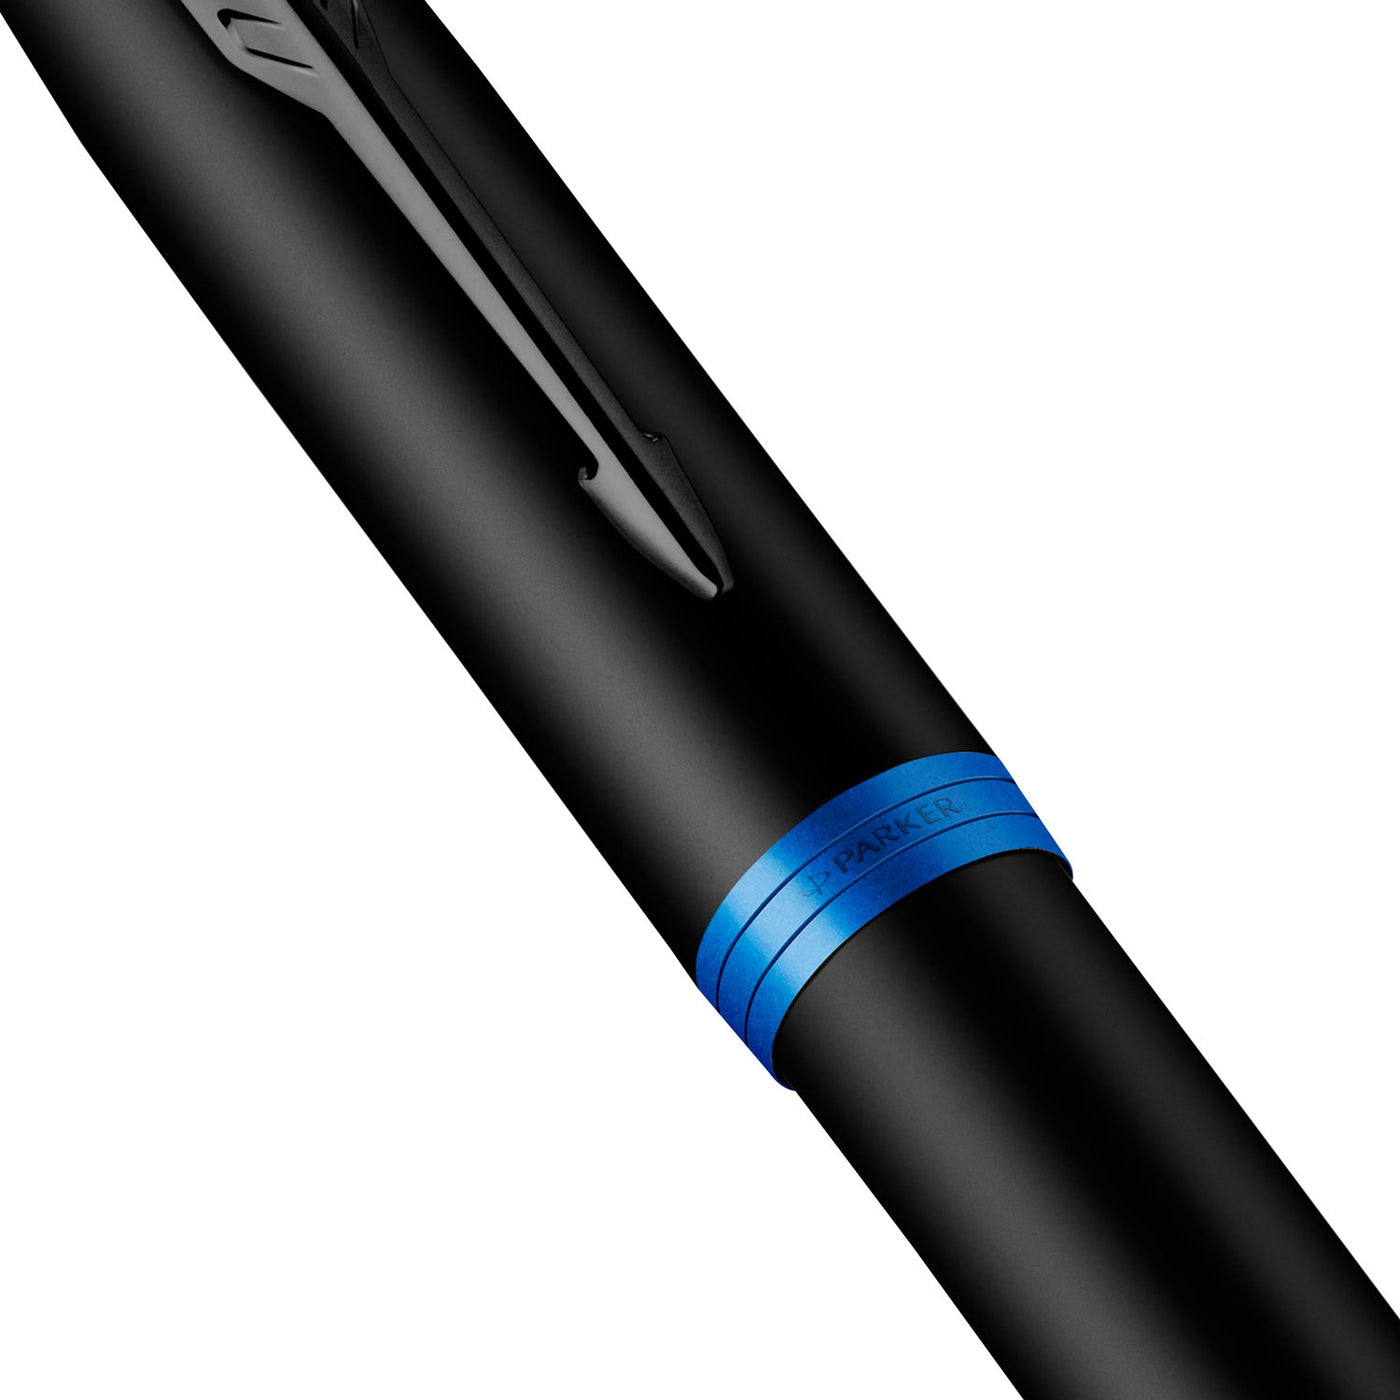 Parker IM Vibrant Rings Fountain Pen - Marine Blue Black BT 5